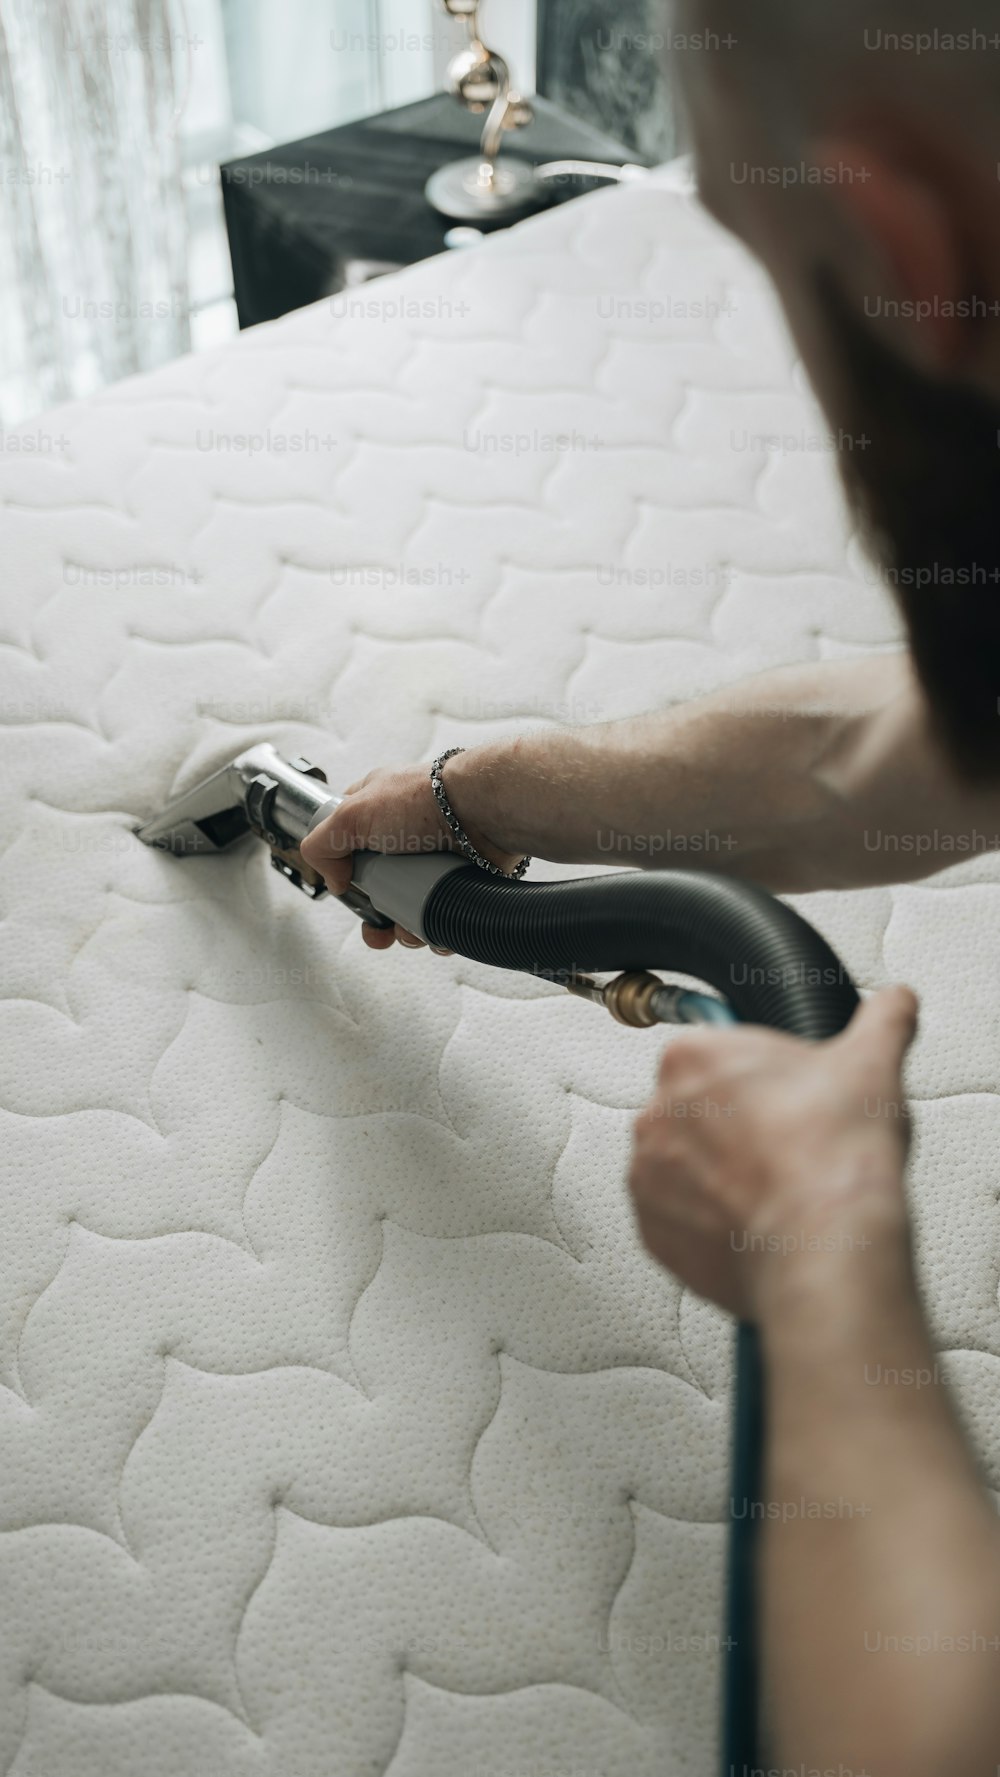 Un uomo sta pulendo un materasso con un aspirapolvere